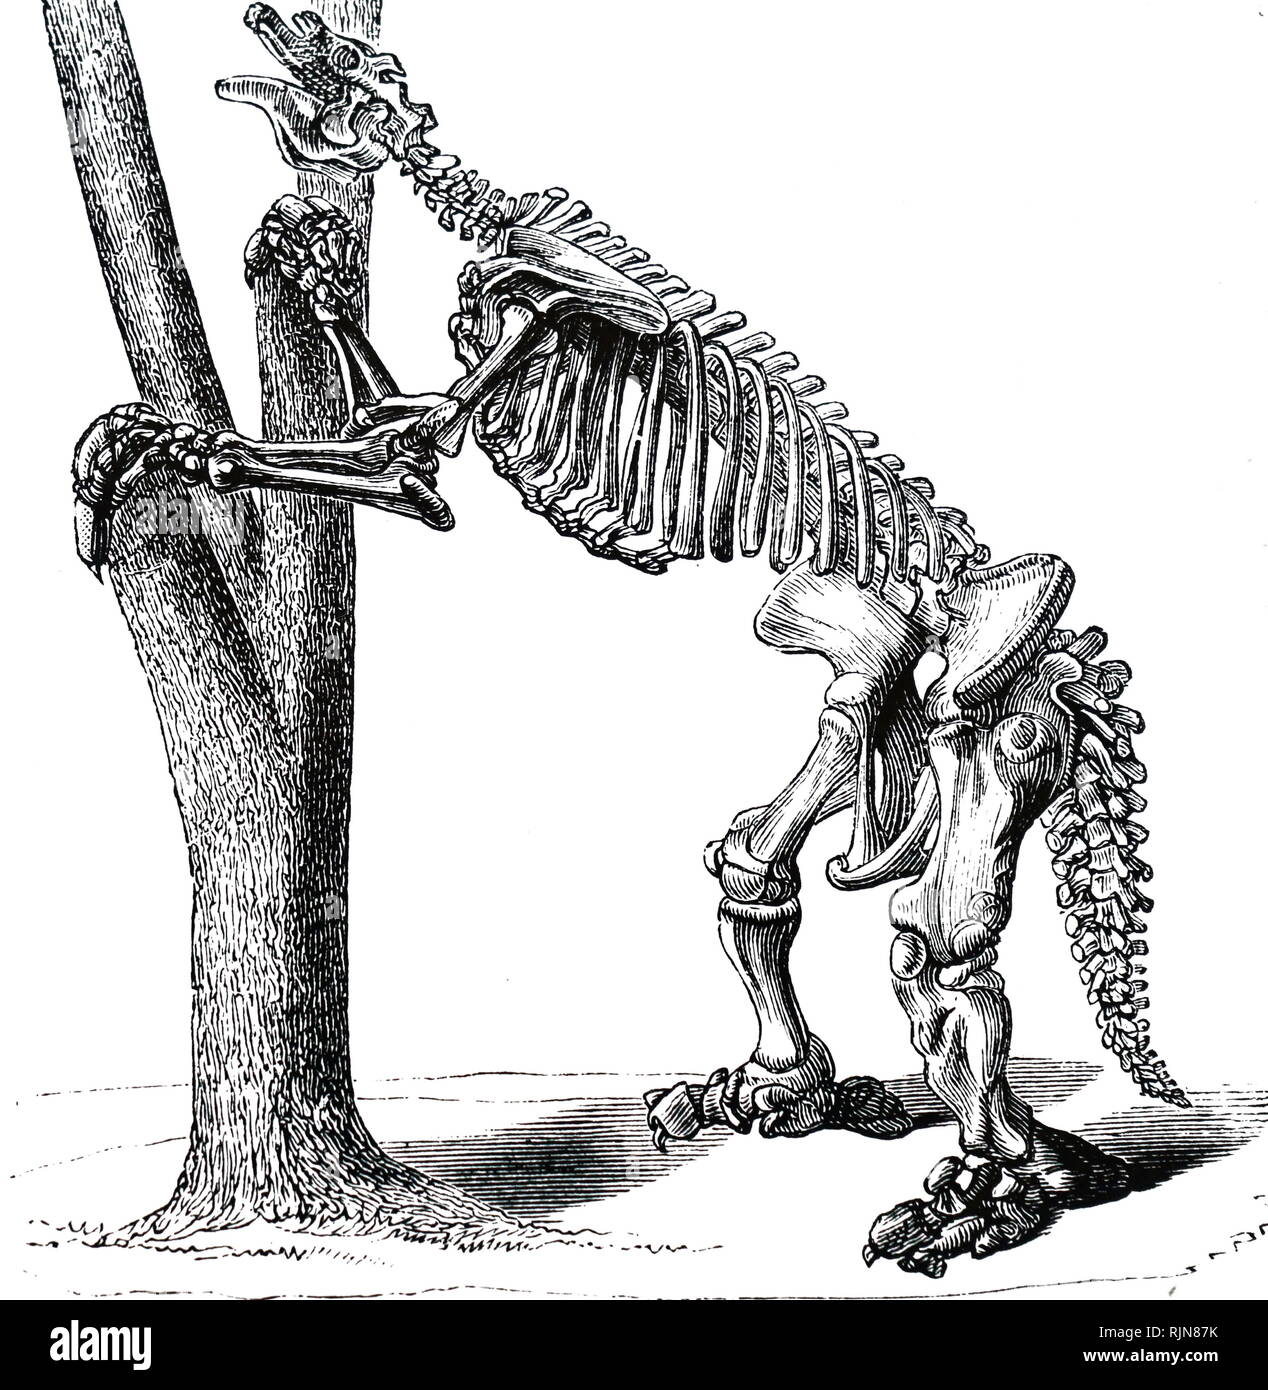 Un grabado representando el esqueleto de un Megatherium (giant Ground Sloth) principalmente mamíferos sudamericanos del tamaño de un elefante - Períodos Plioceno y Pleistoceno Superior. Fecha del siglo XIX Foto de stock